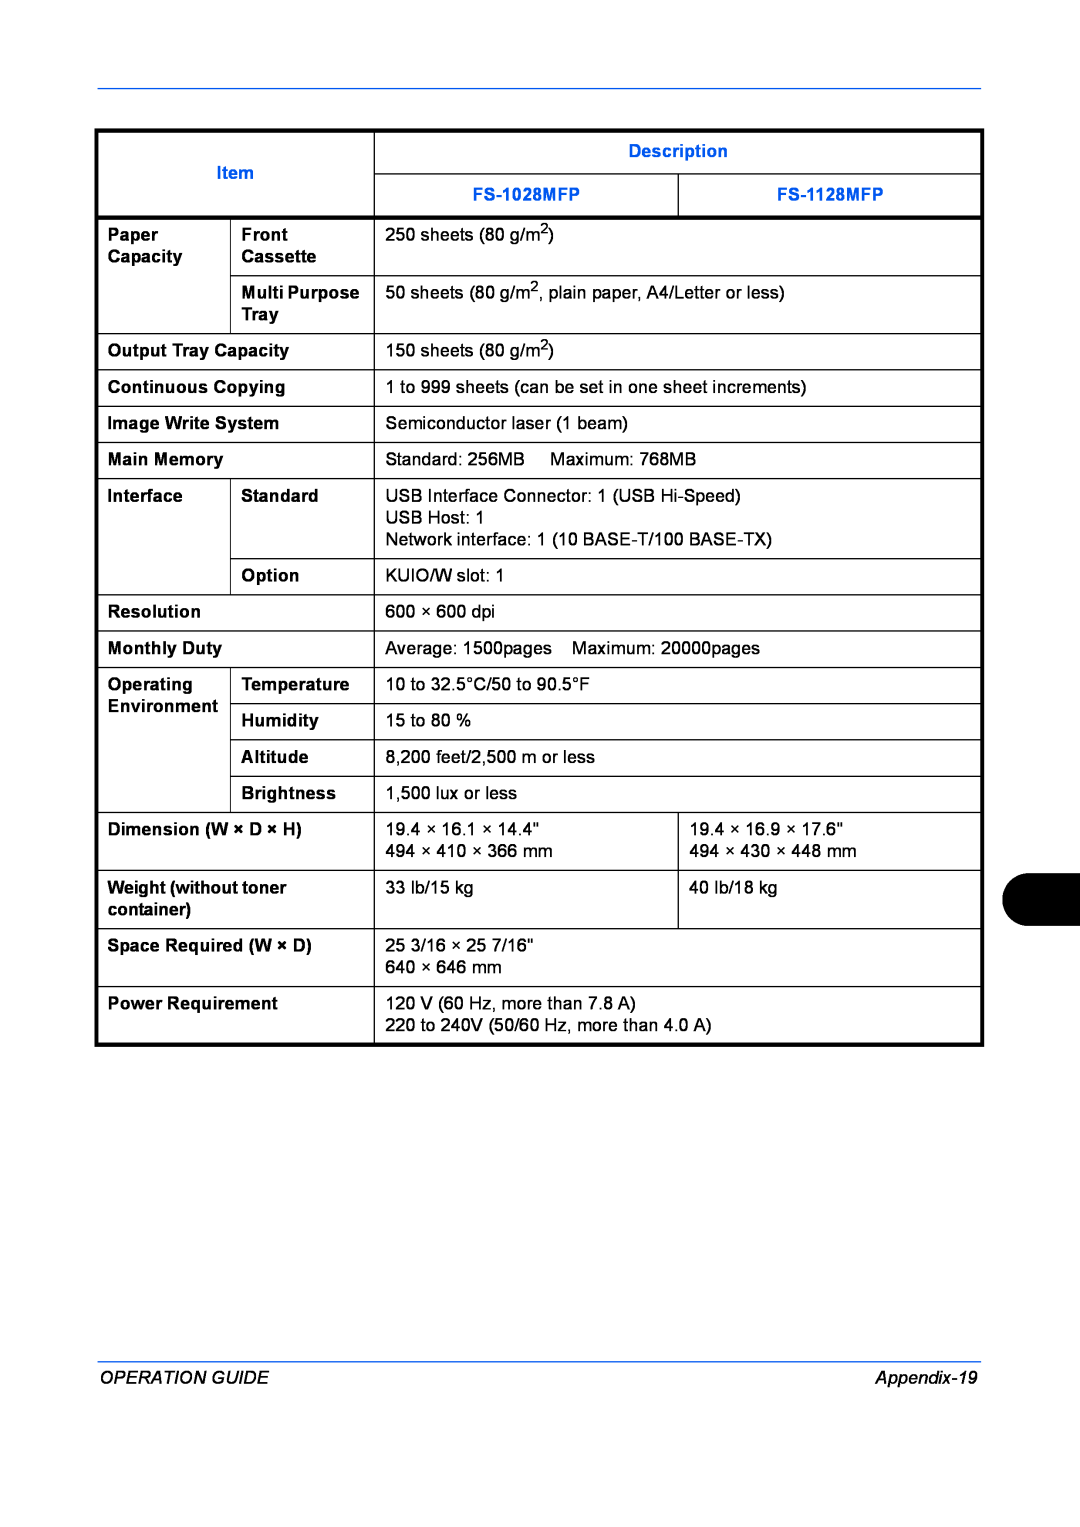 Kyocera FS-1128MFP manual Description, FS-1028MFP, Operation Guide, Appendix-19 